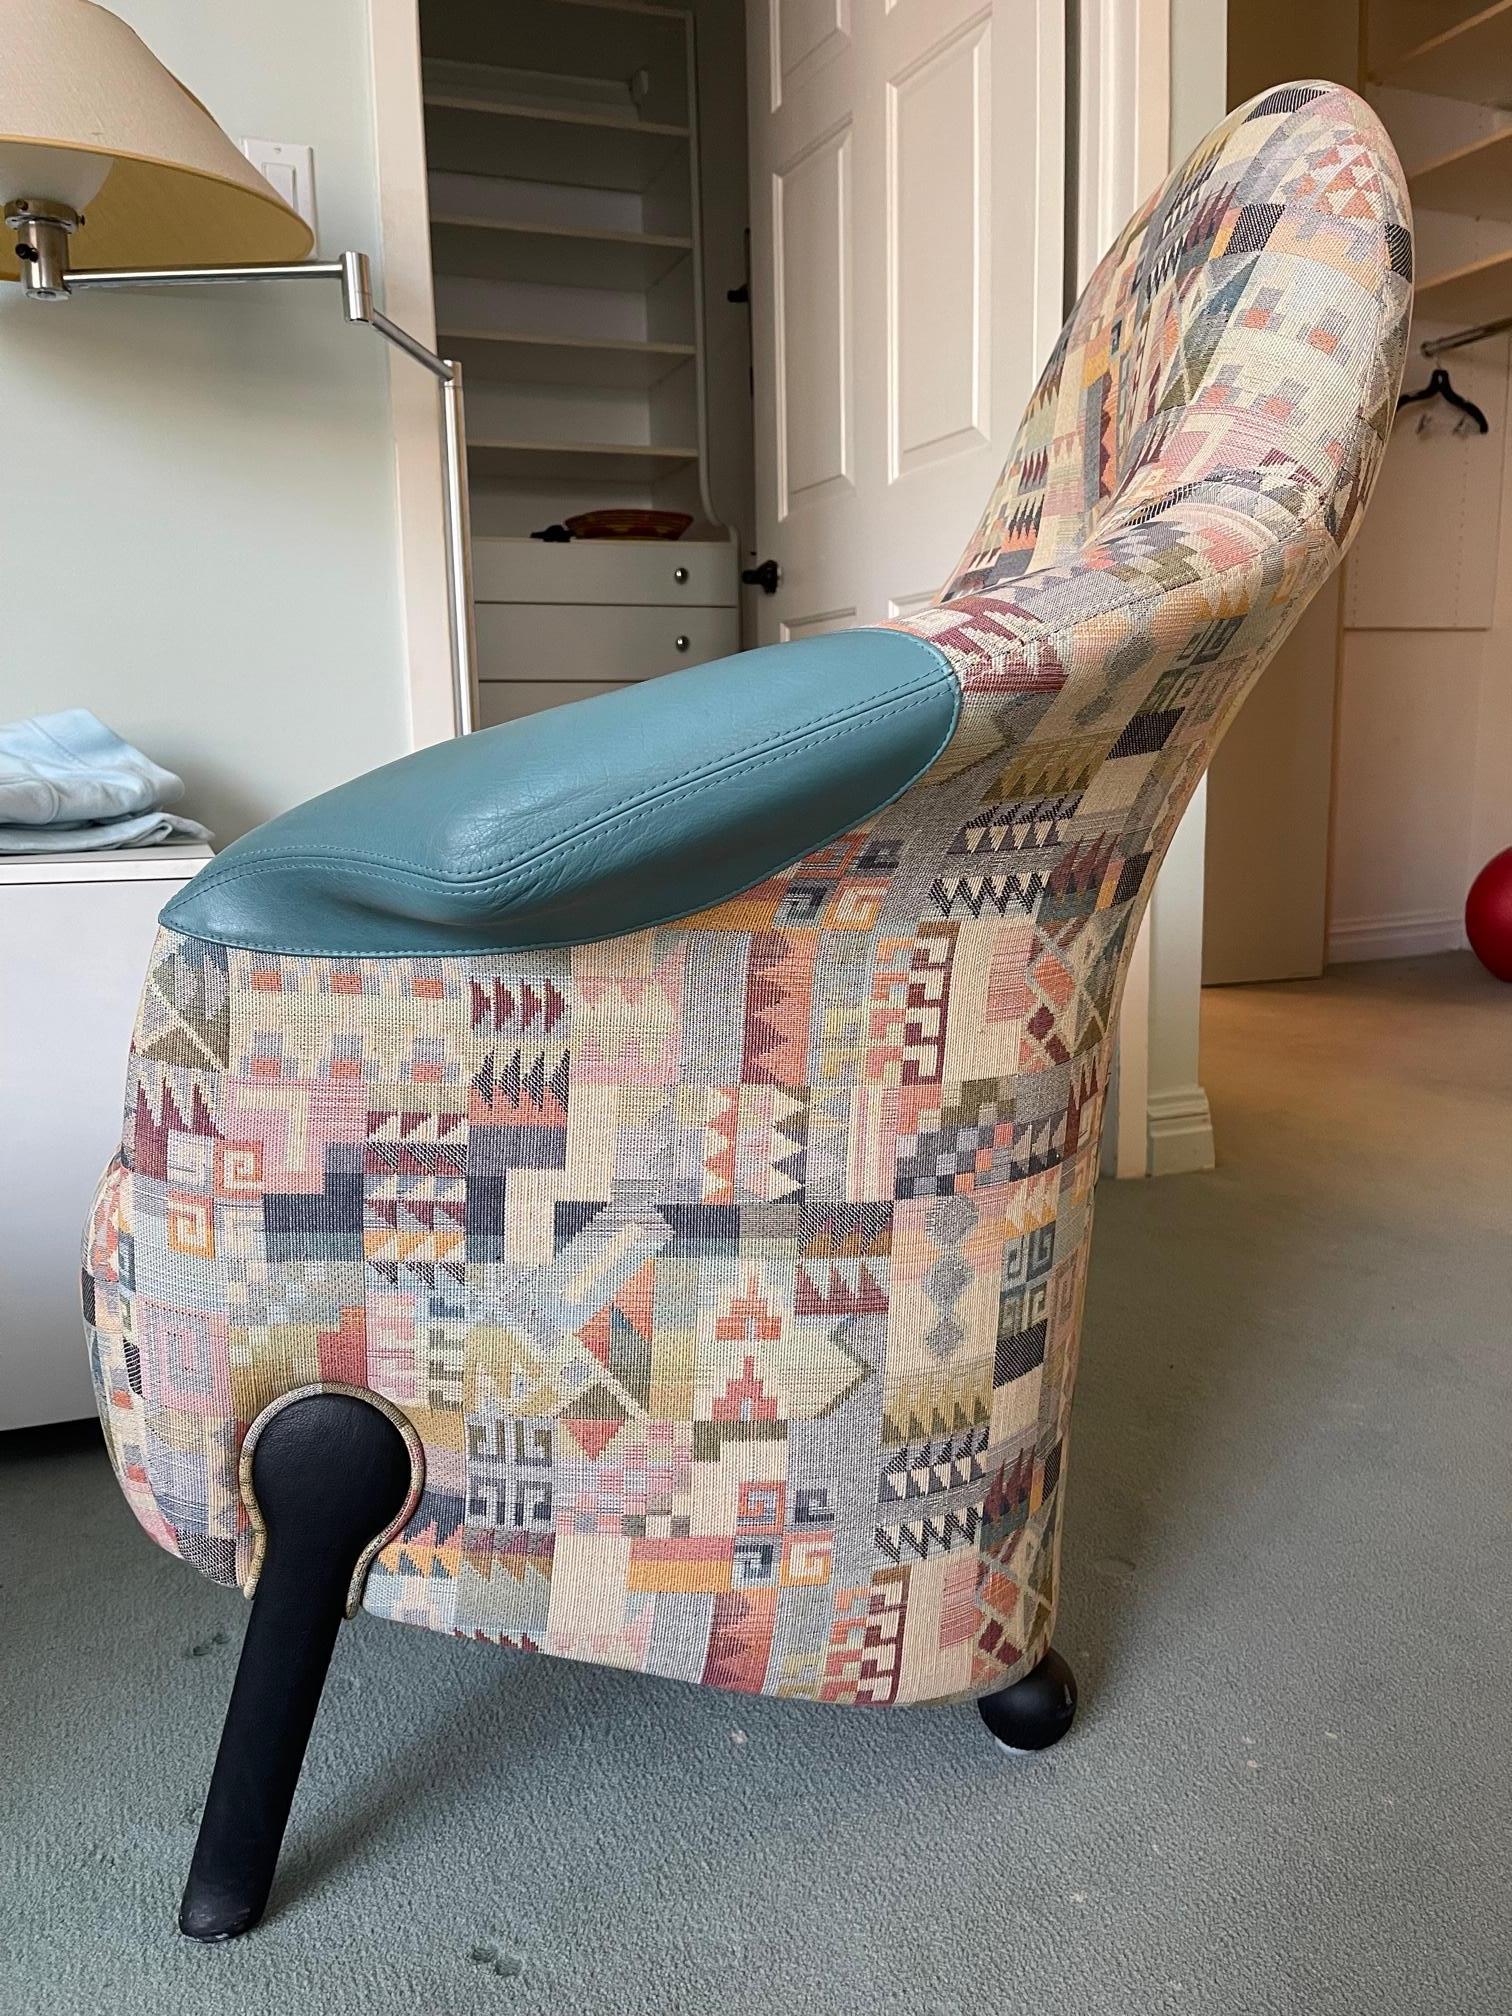 Original Missoni Relaxsessel aus Leder und Stoff mit Ottomane, entworfen von Franz Wittmann. Dieser Stuhl ist ein österreichisches Design und wurde in den 1970er Jahren hergestellt.  Die hinteren Stuhlbeine haben eine runde Form, die sich von den